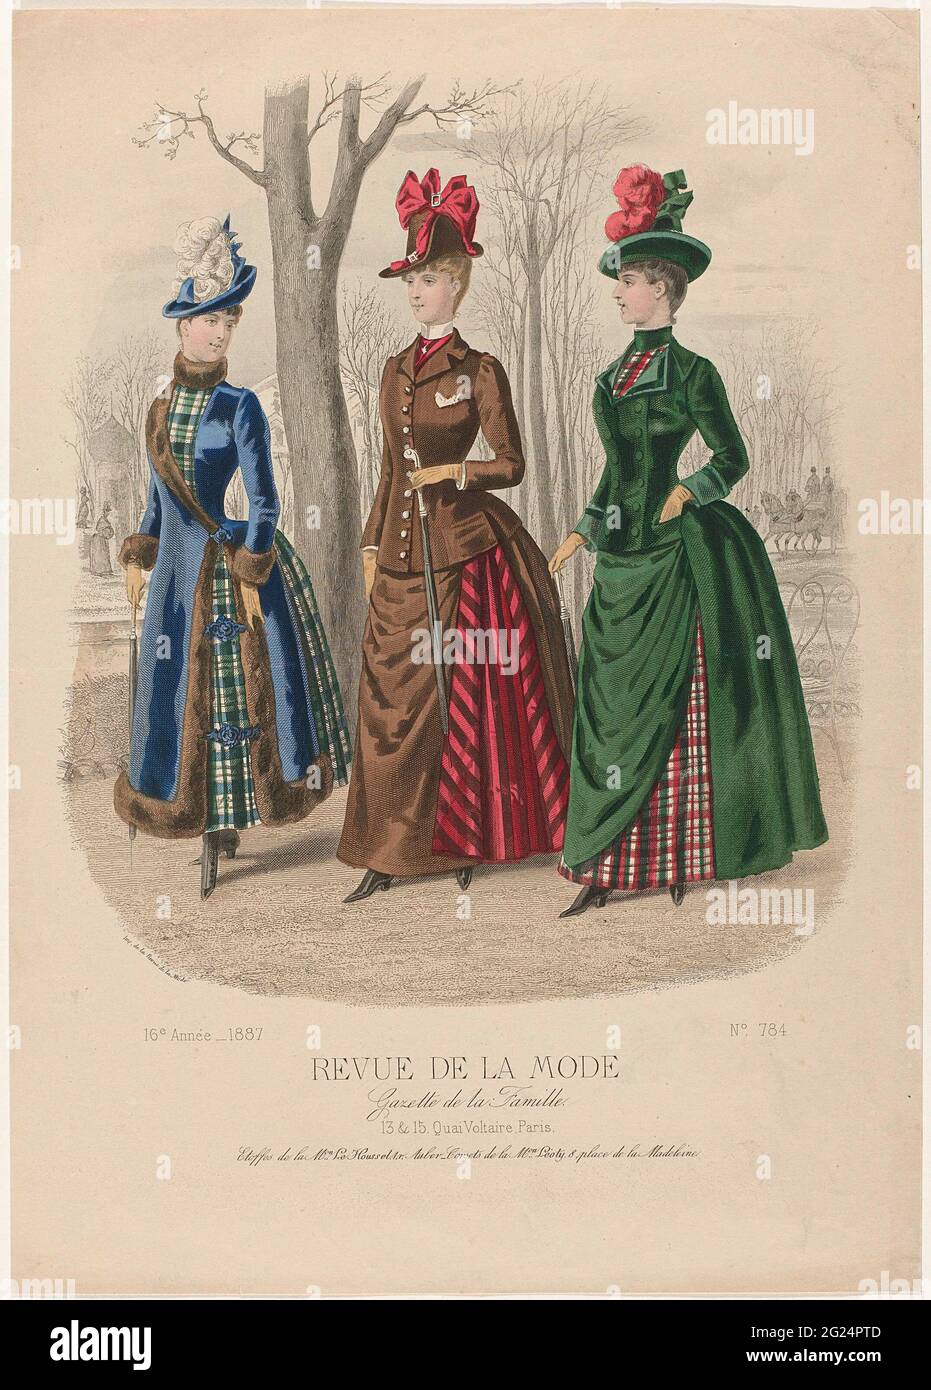 Revue de la fashion, Gazette de la Famille, Dimanche 9 Janvier 1887, 16th  Année, No. 784: Etoffes de la M.ON Le Houssel (...). Three women hiking in  a park, in the background